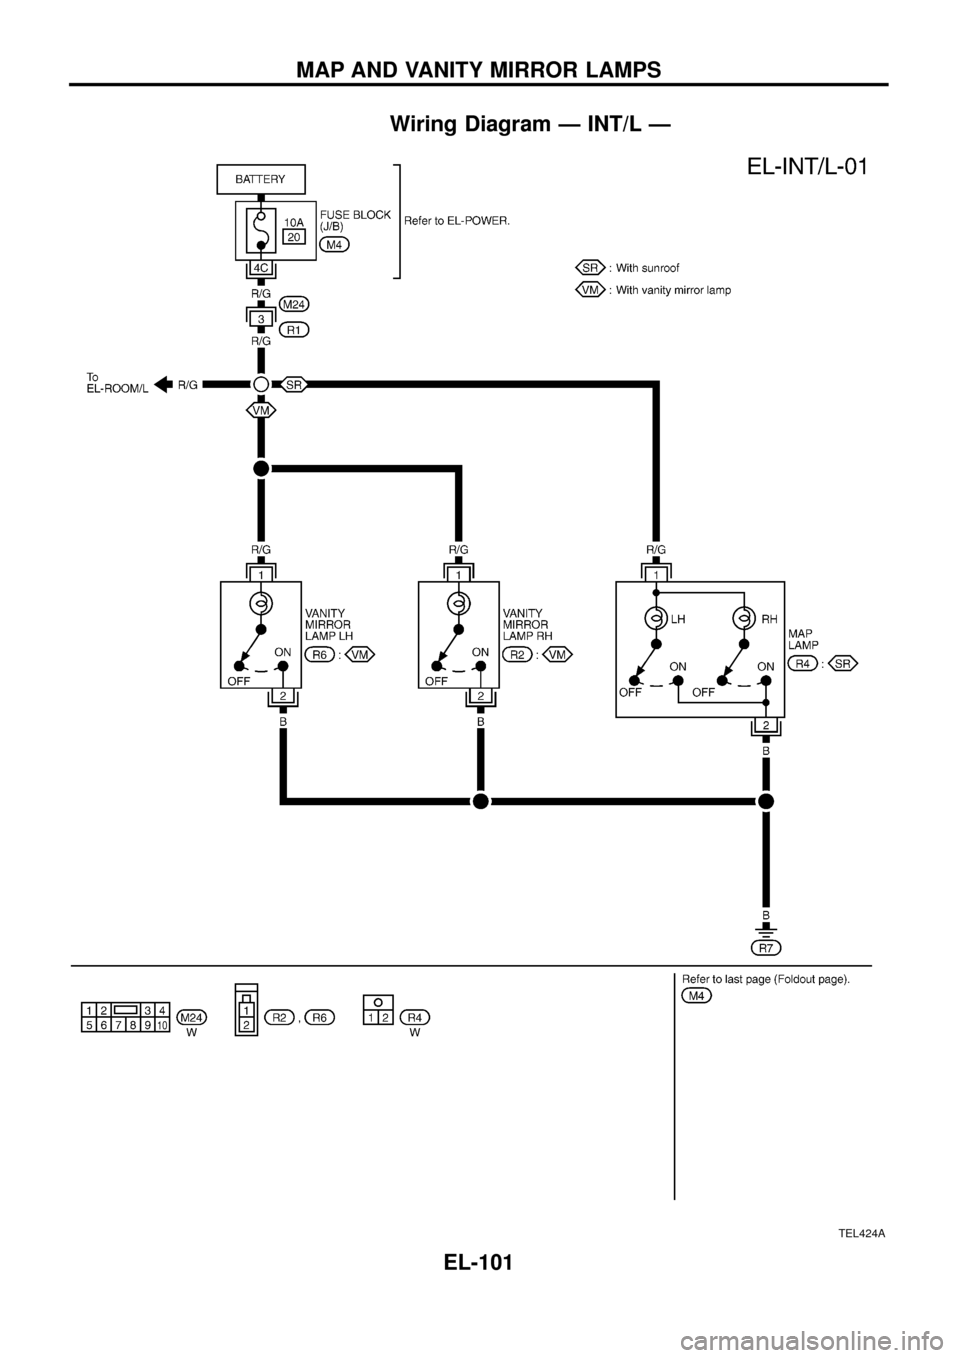 NISSAN PATROL 1998 Y61 / 5.G Electrical System Workshop Manual Wiring Diagram Ð INT/L Ð
TEL424A
MAP AND VANITY MIRROR LAMPS
EL-101 